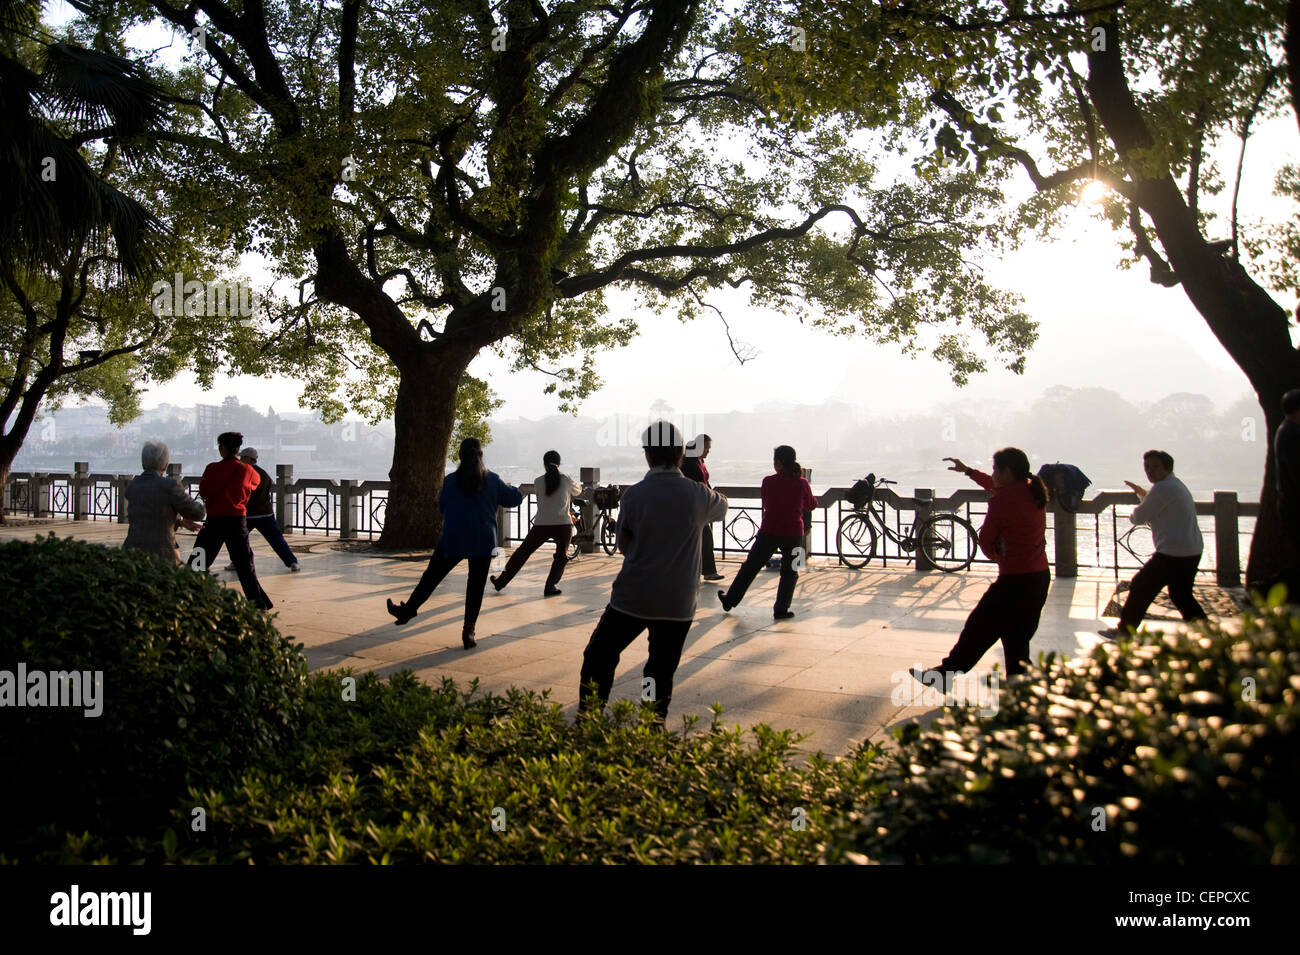 People In A Public Park Doing Tai Chi; Guangxi Zhuang,China Stock Photo